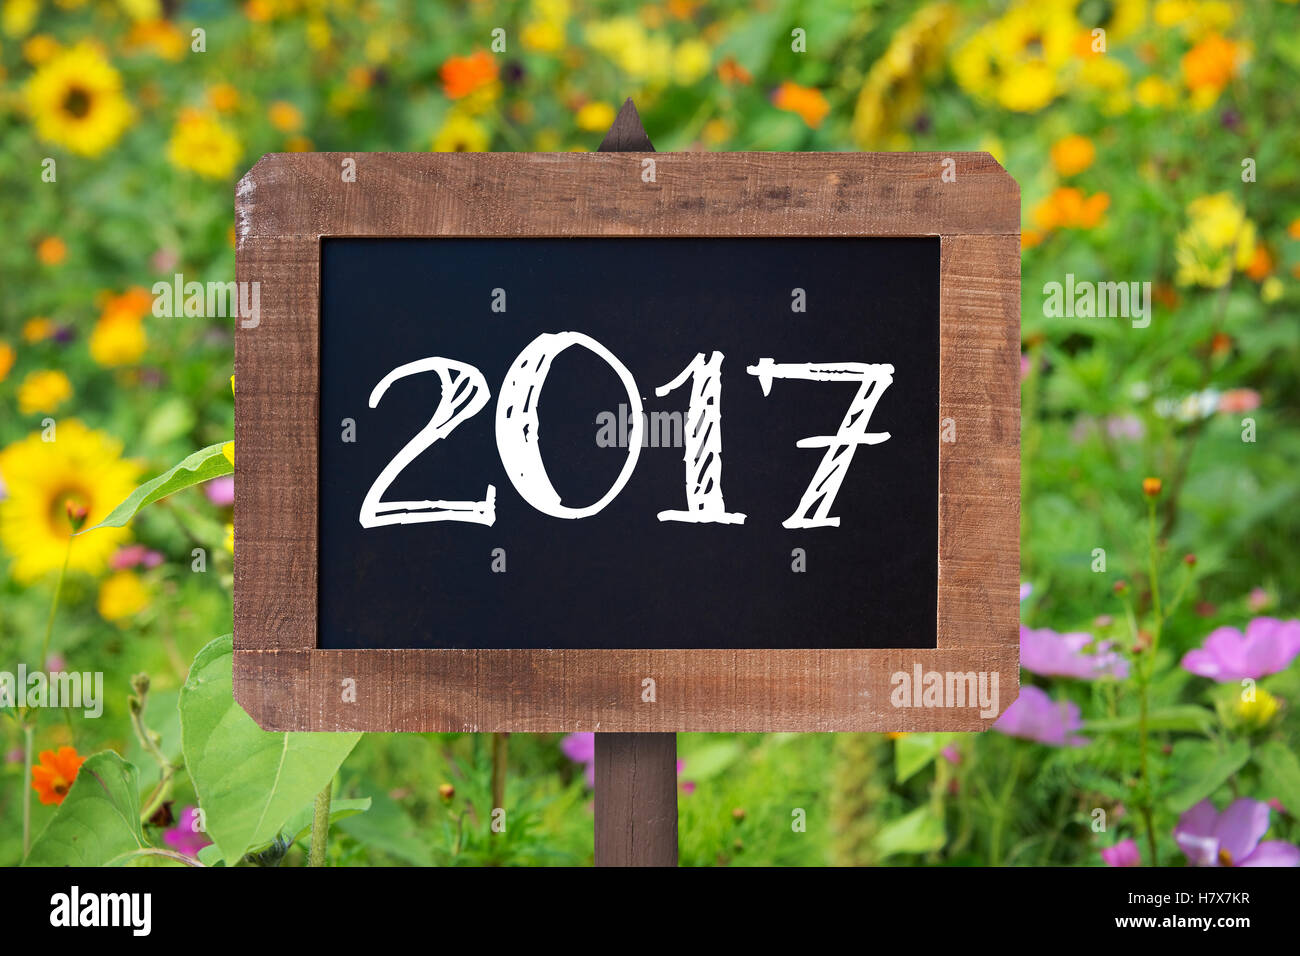 2017 scritto su di un cartello in legno, girasoli e fiori selvatici in background Foto Stock